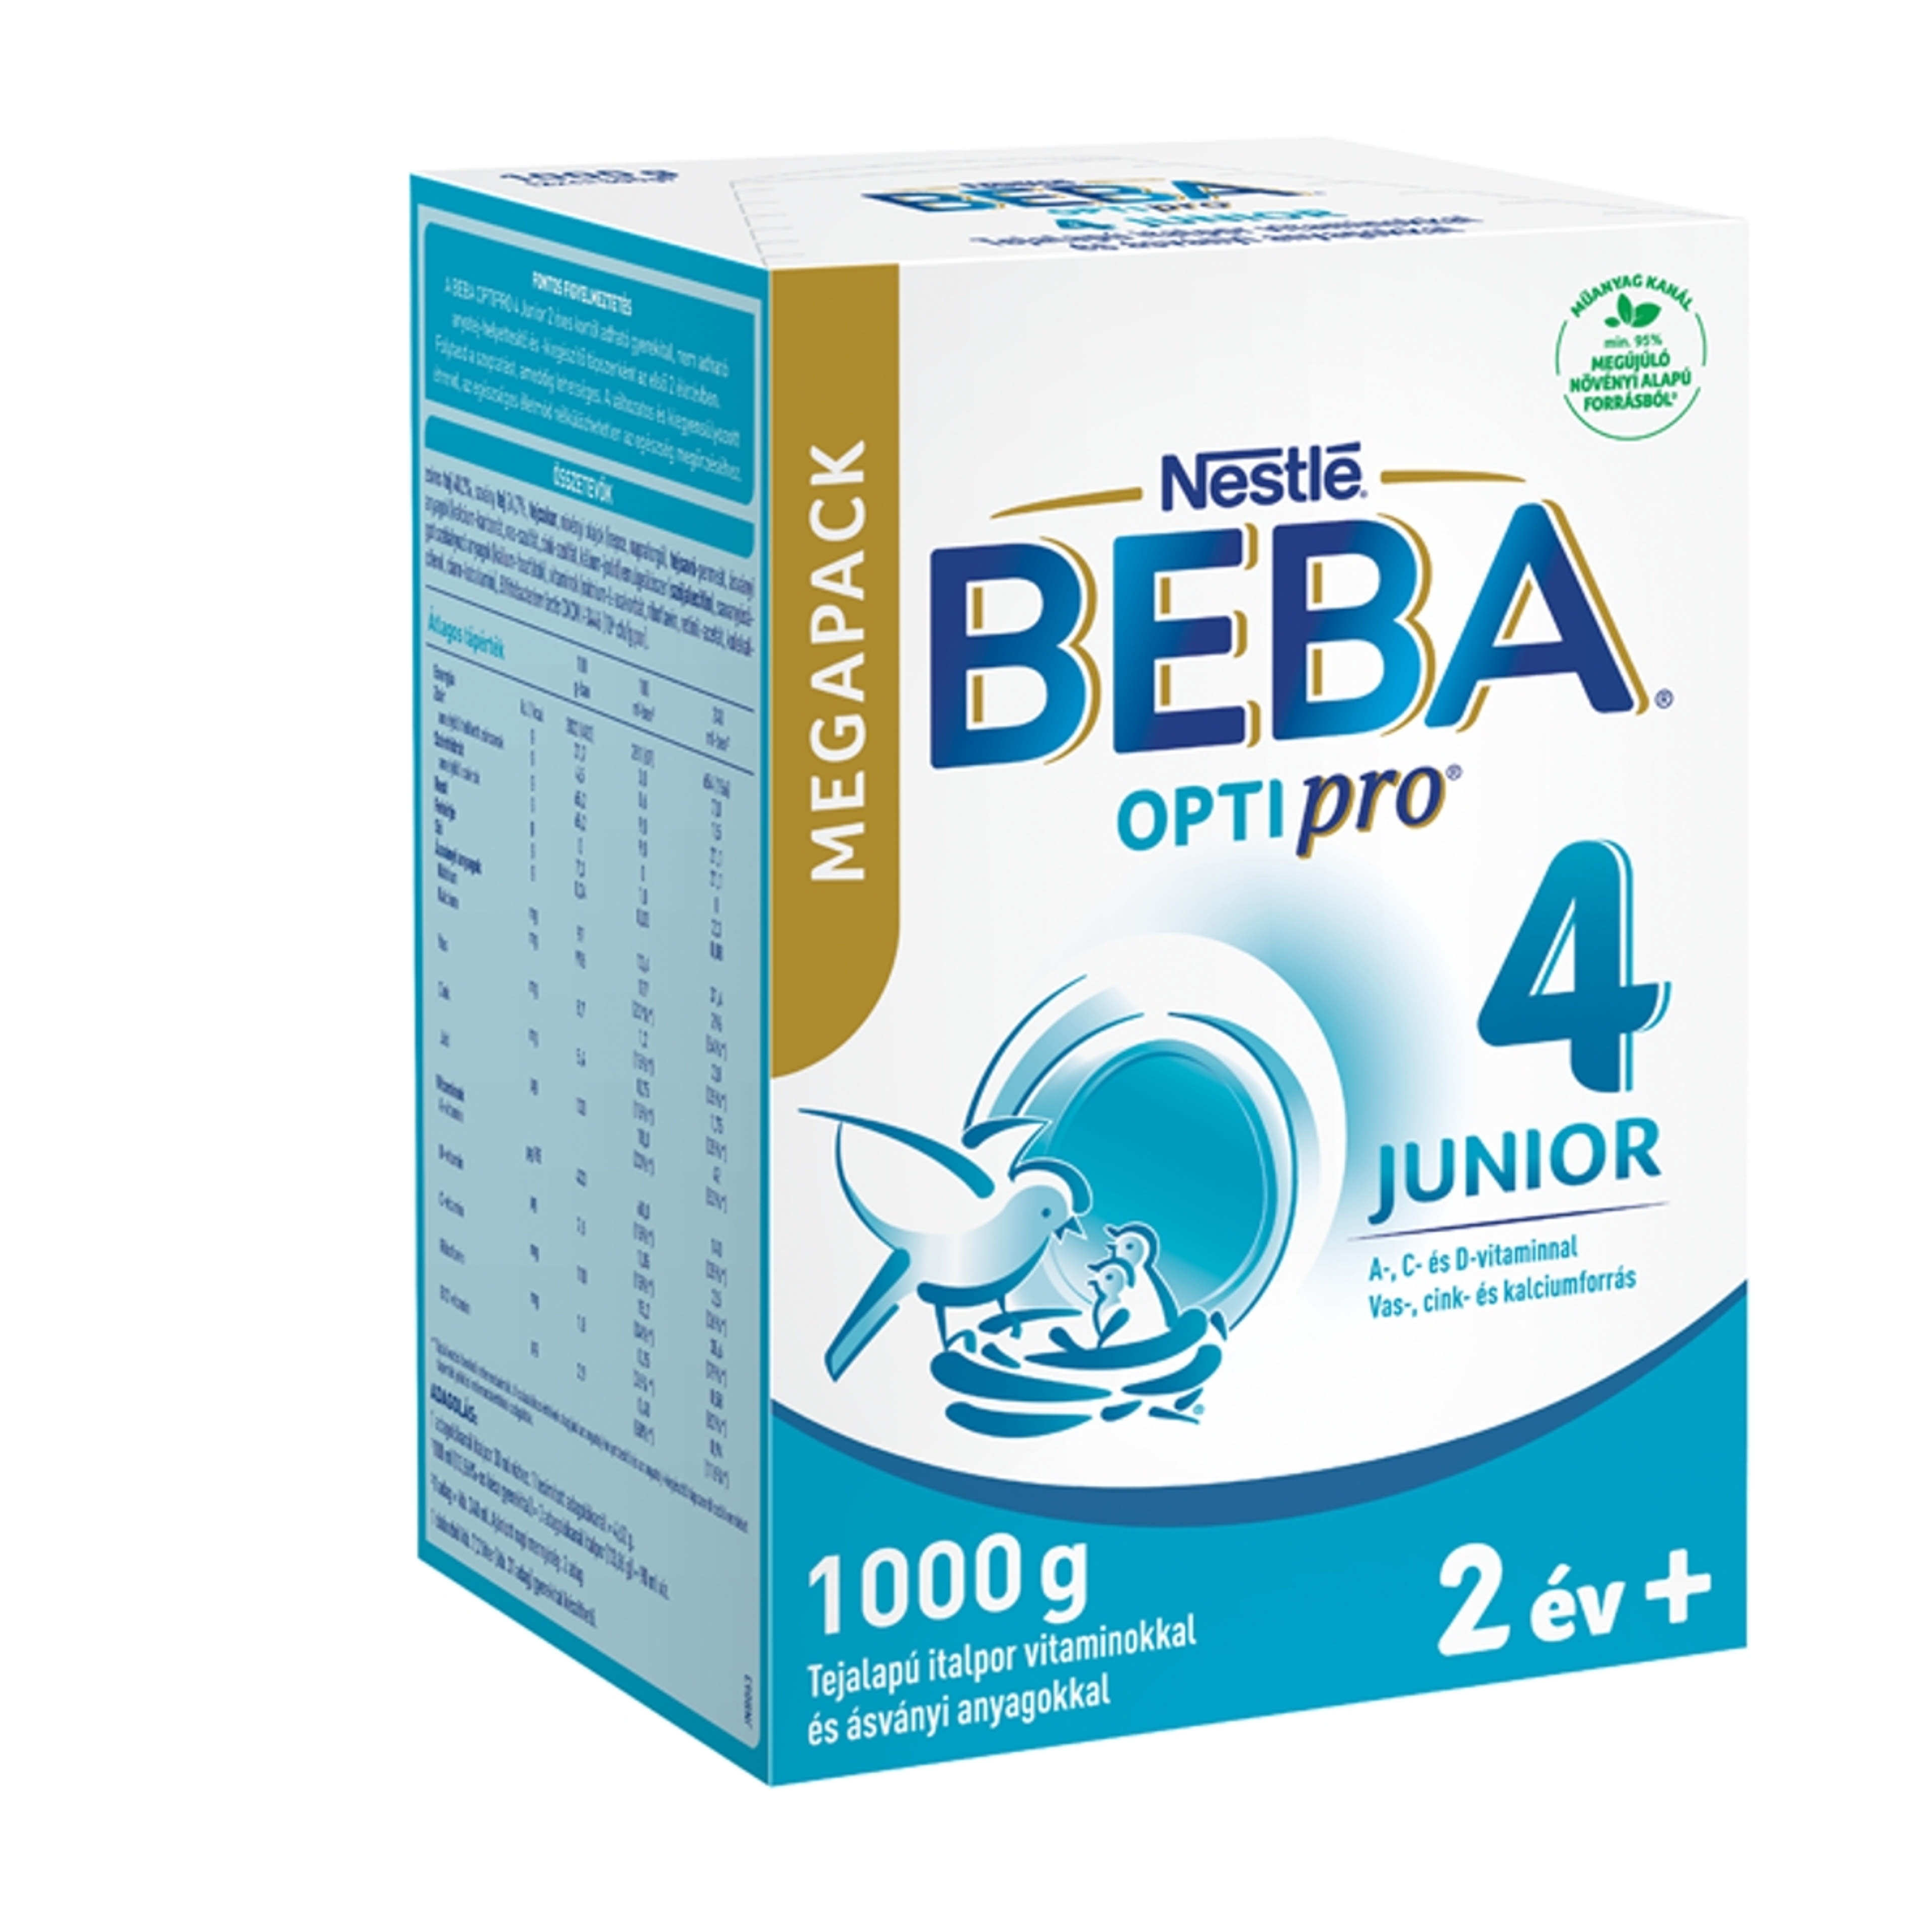 Beba Optipro 4 Junior tejalapú italpor vitaminokkal és ásványi anyagokkal 2 éves kortól - 1000 g-4